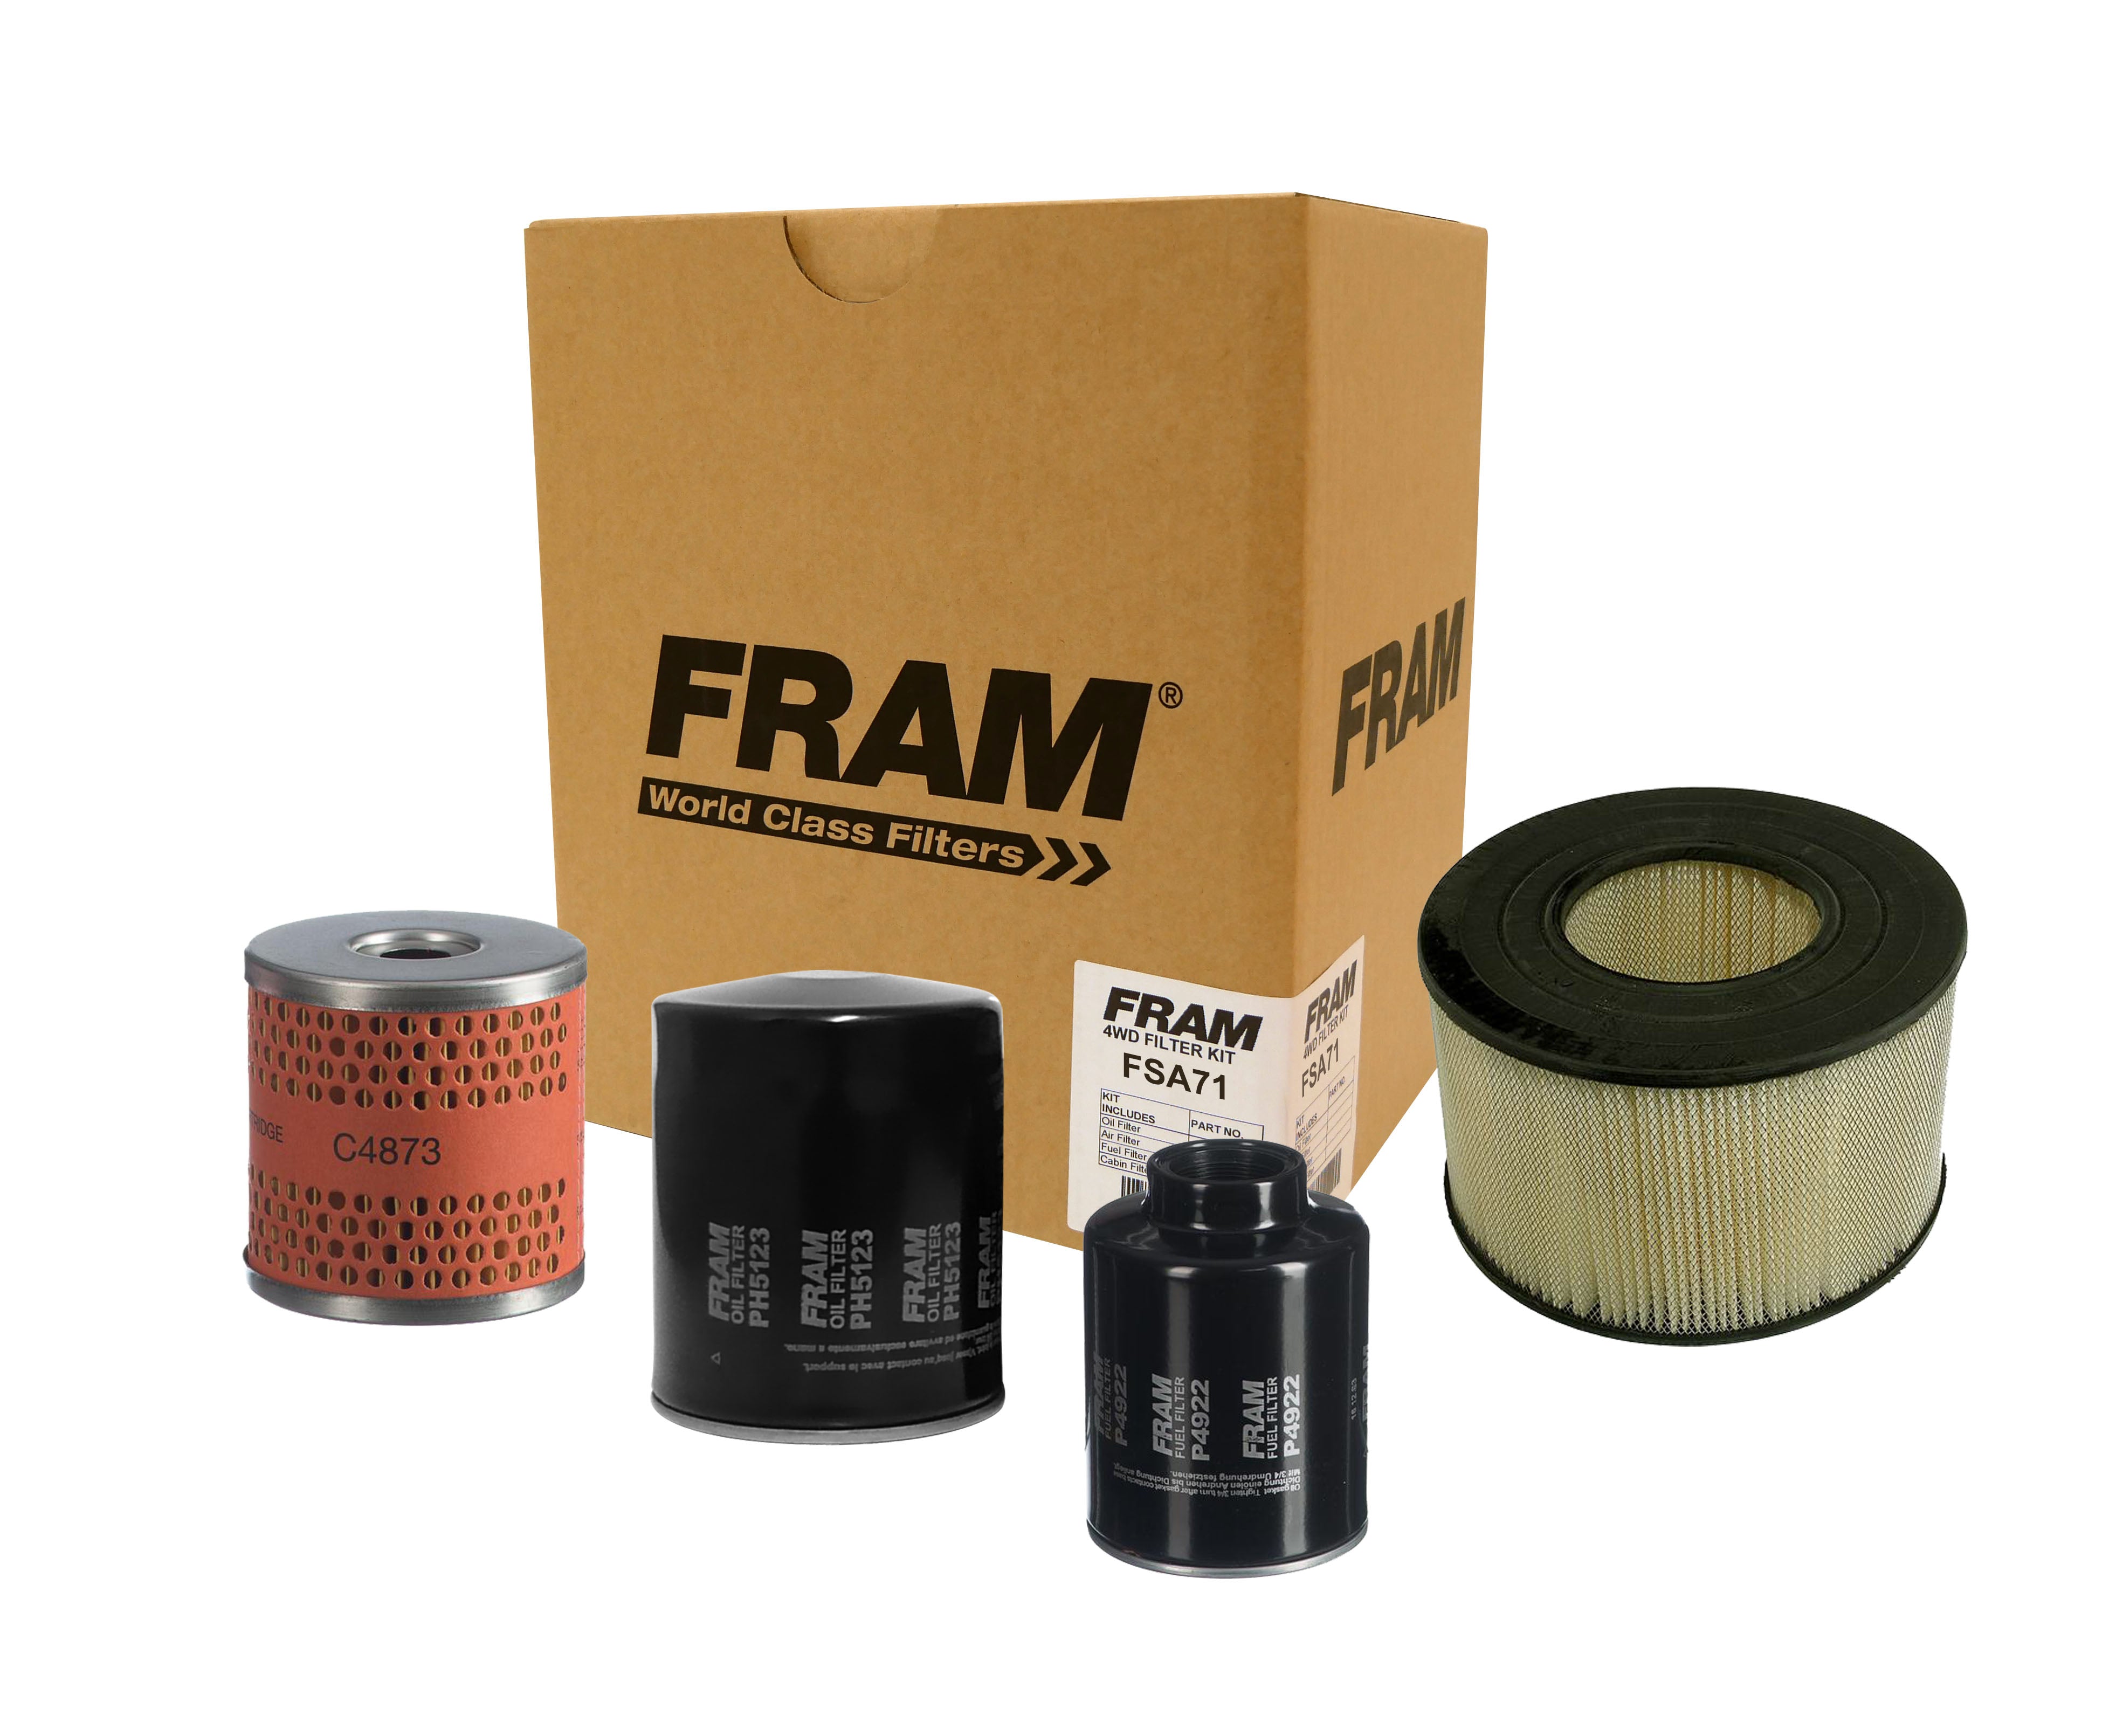 FRAM 4wd Filter Kit for Toyota Landcruiser HZJ7# | FRAM